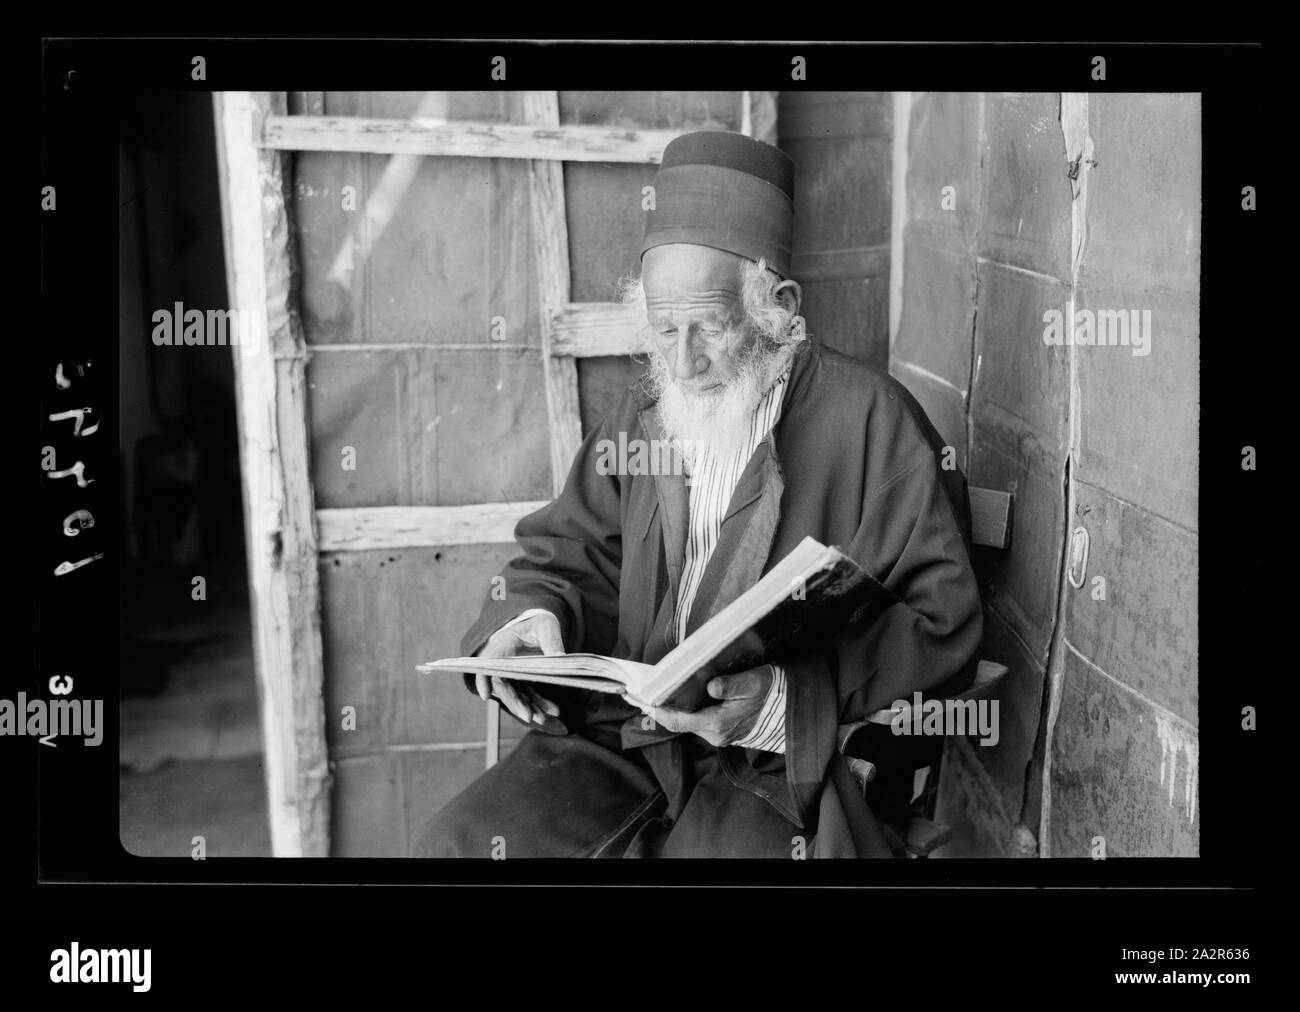 Torah Banque d'images noir et blanc - Page 3 - Alamy